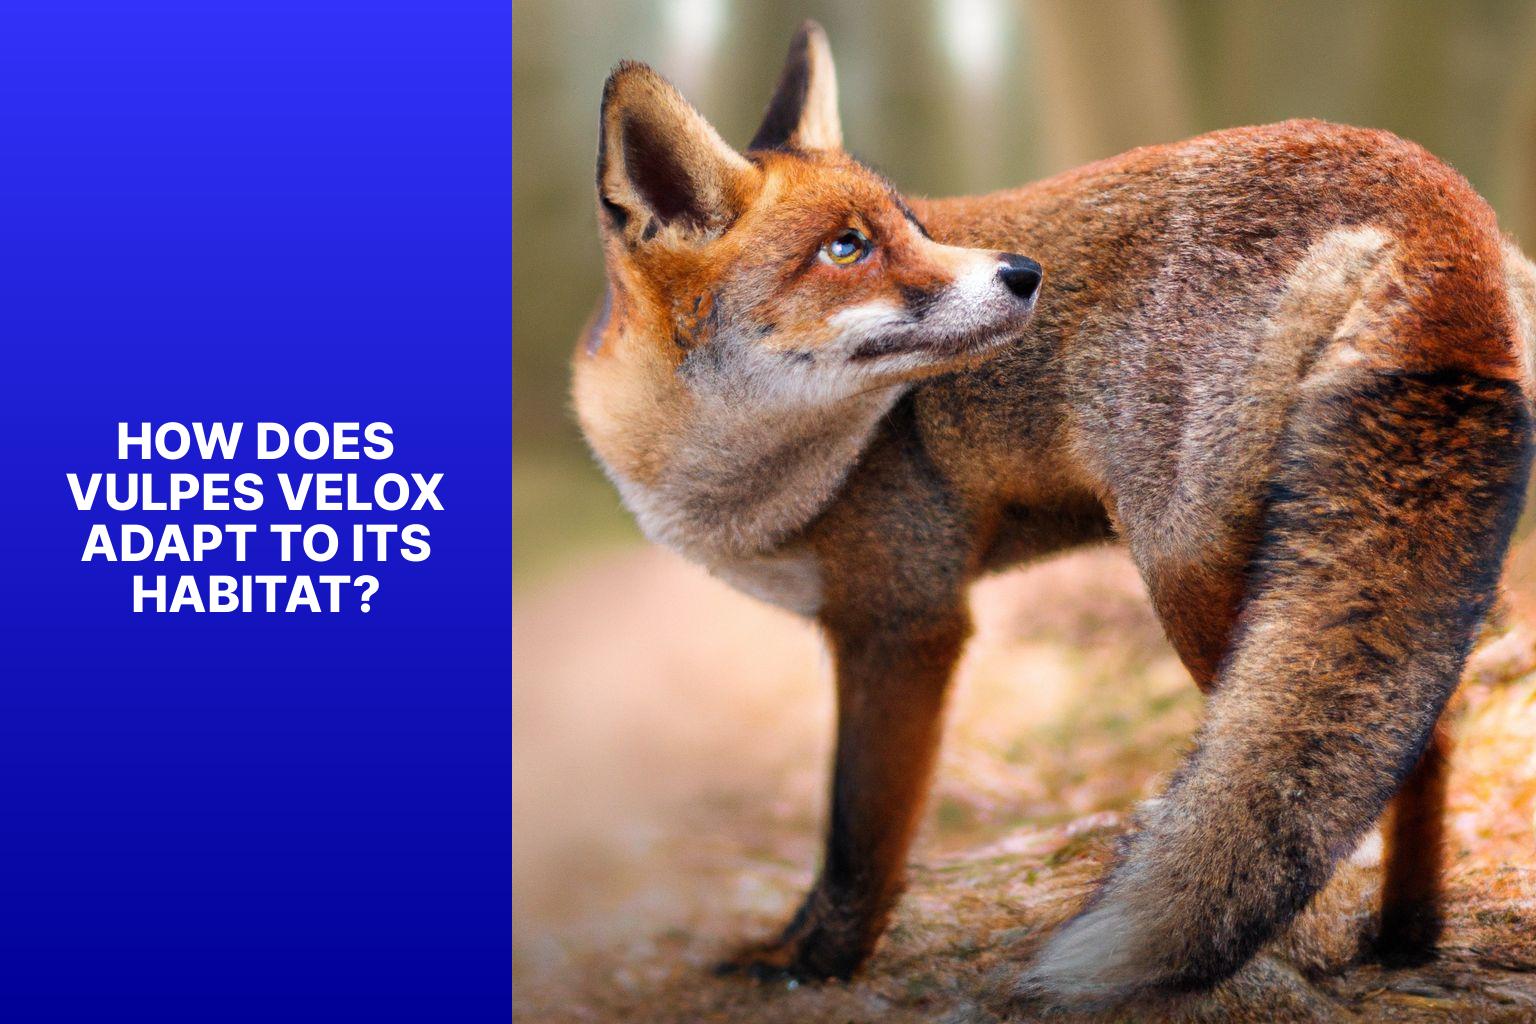 How Does Vulpes Velox Adapt to its Habitat? - Vulpes Velox Habitat 